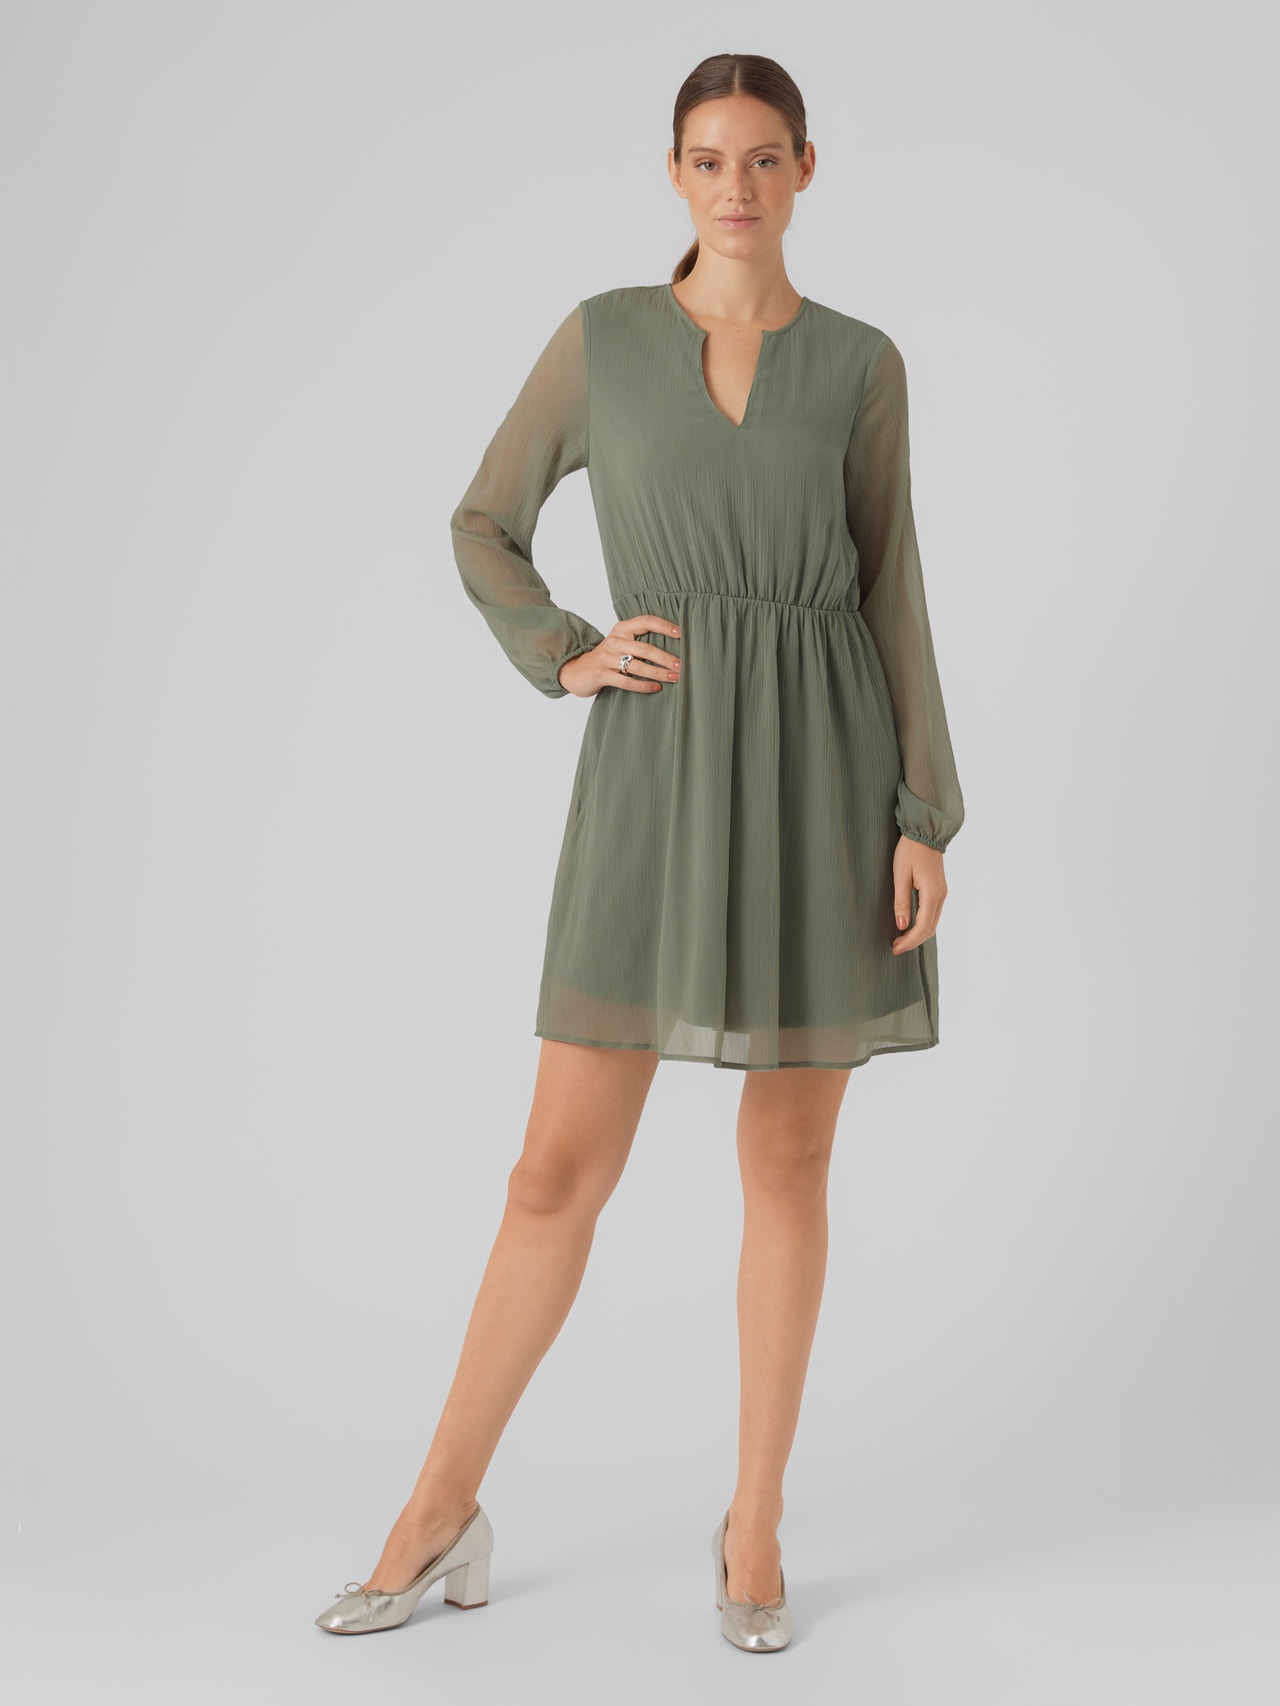 Vero Moda VMVILLA Krótka sukienka -Laurel Wreath - 10305309